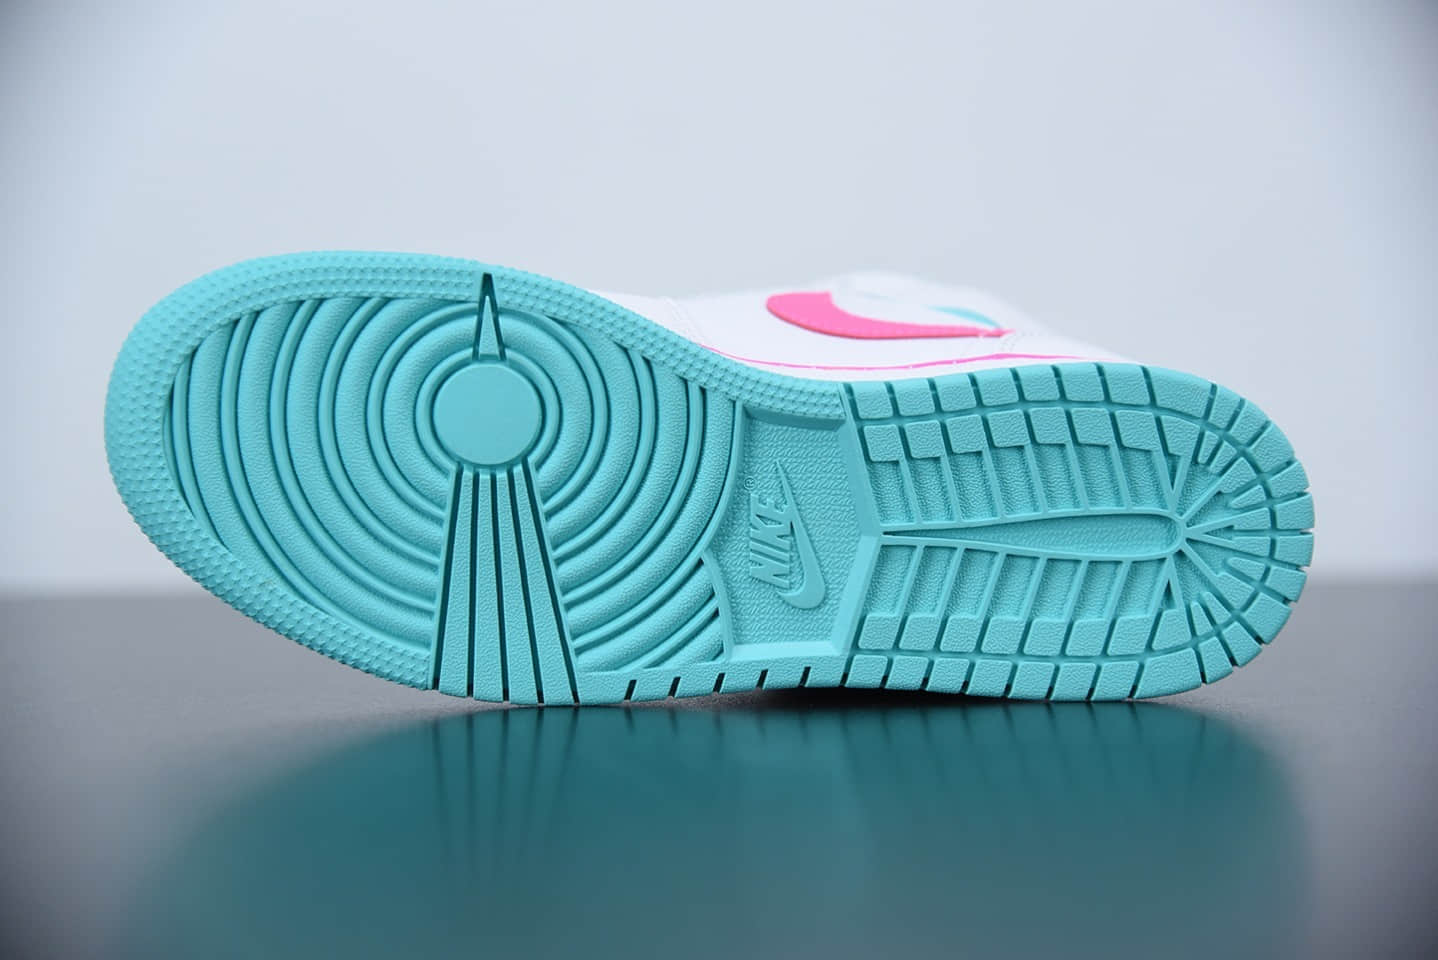 乔丹Air Jordan 1 Mid GS “Digital Pink” 南海岸水月粉女子中帮休闲鞋纯原版本 货号：555112-102